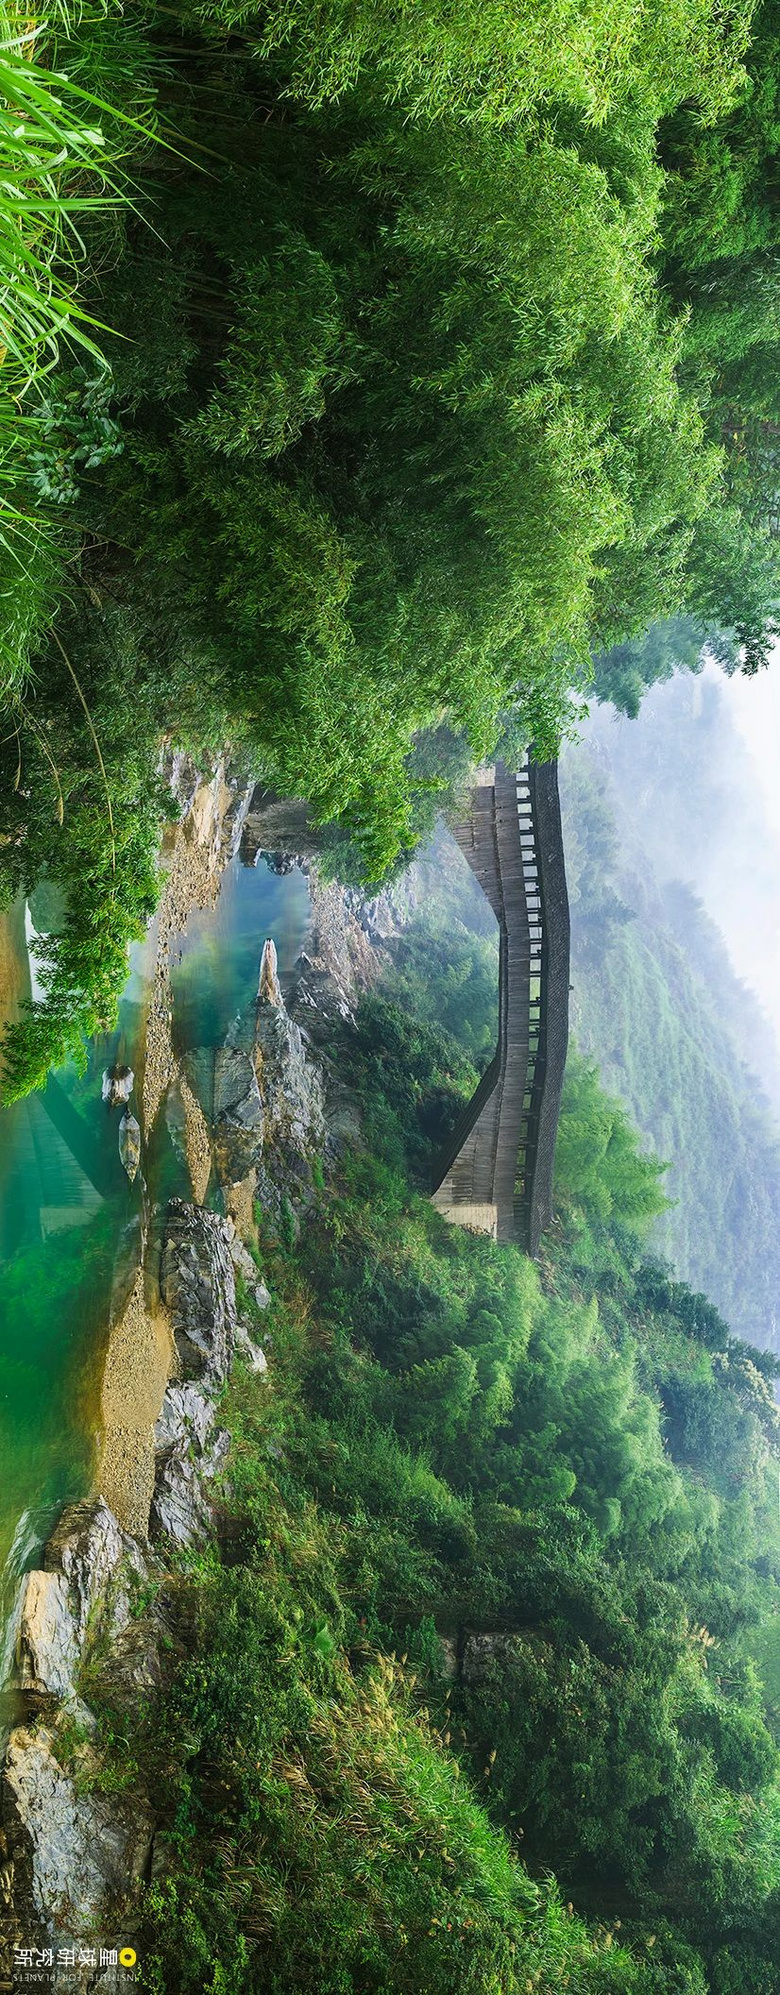 中国古桥,有多美?